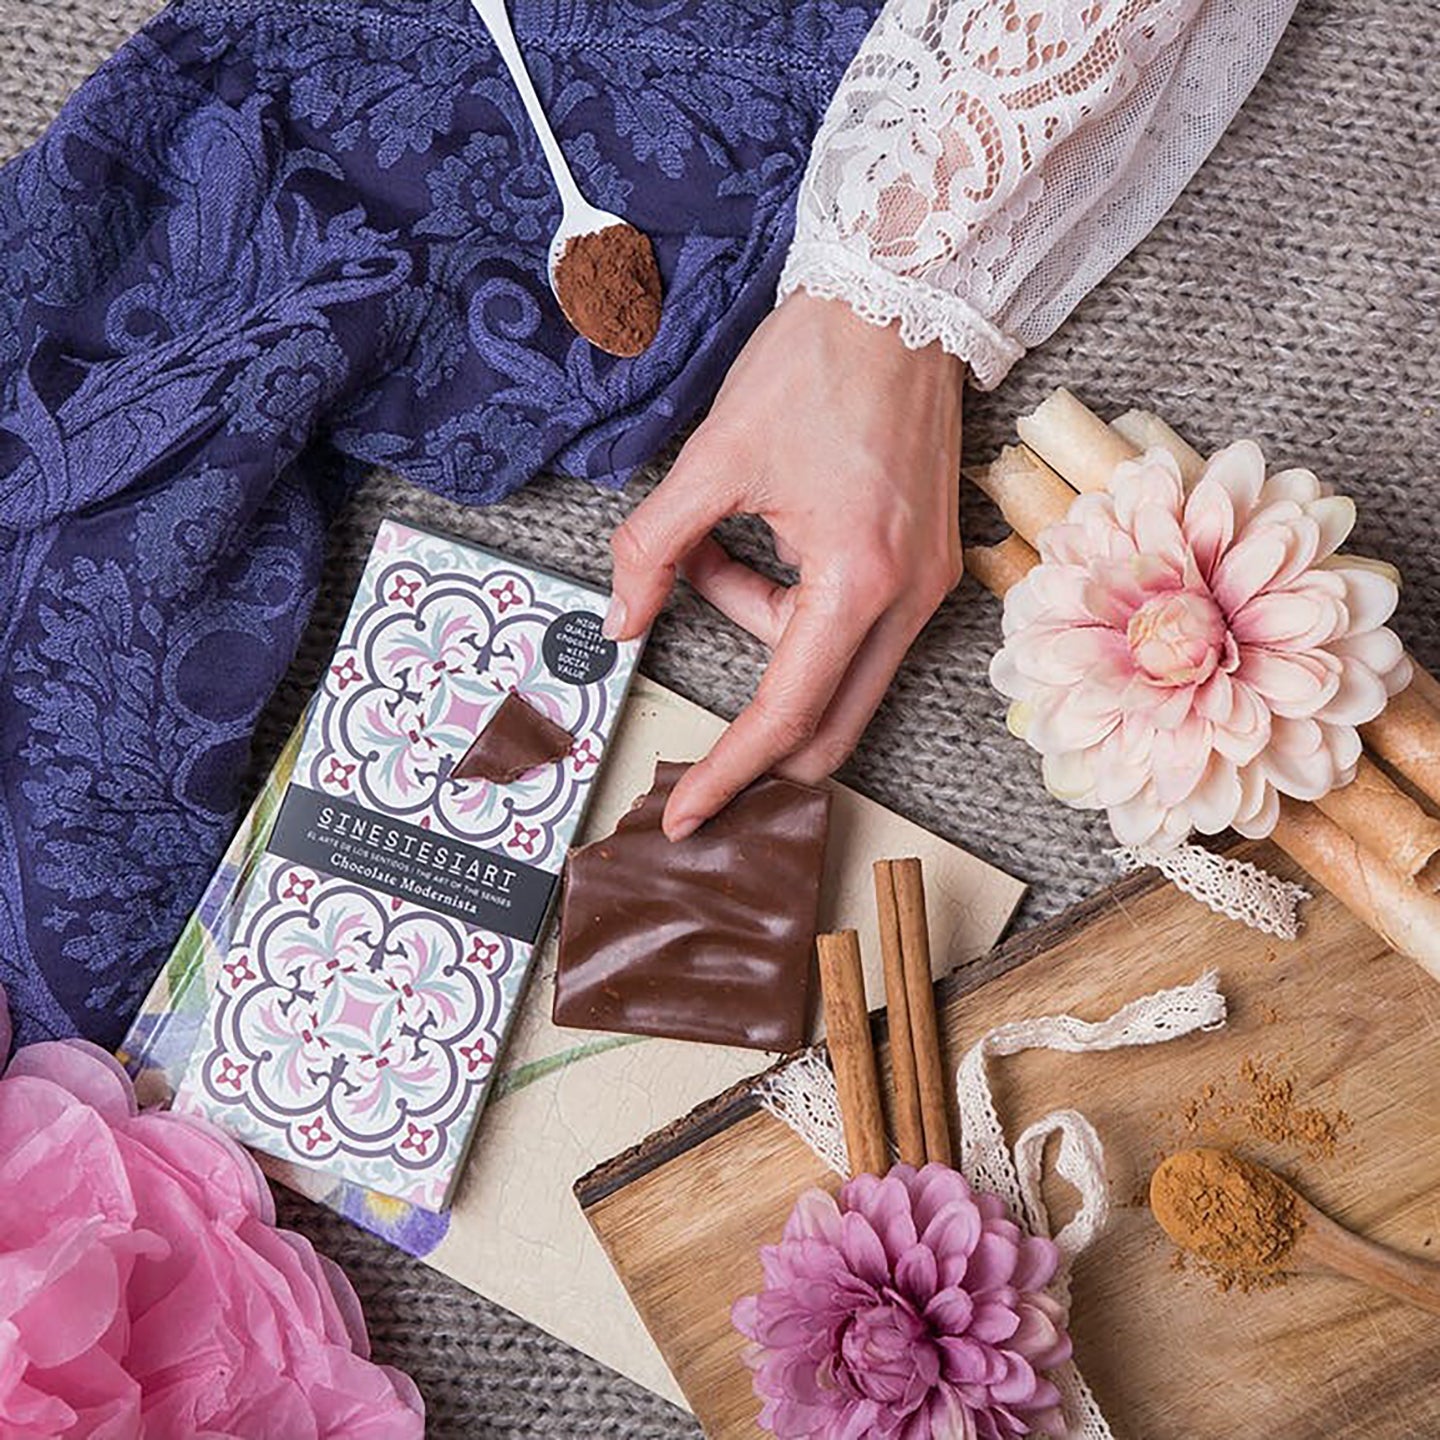 Une tablette de chocolat Moderniste - Mieux Que Des Fleurs